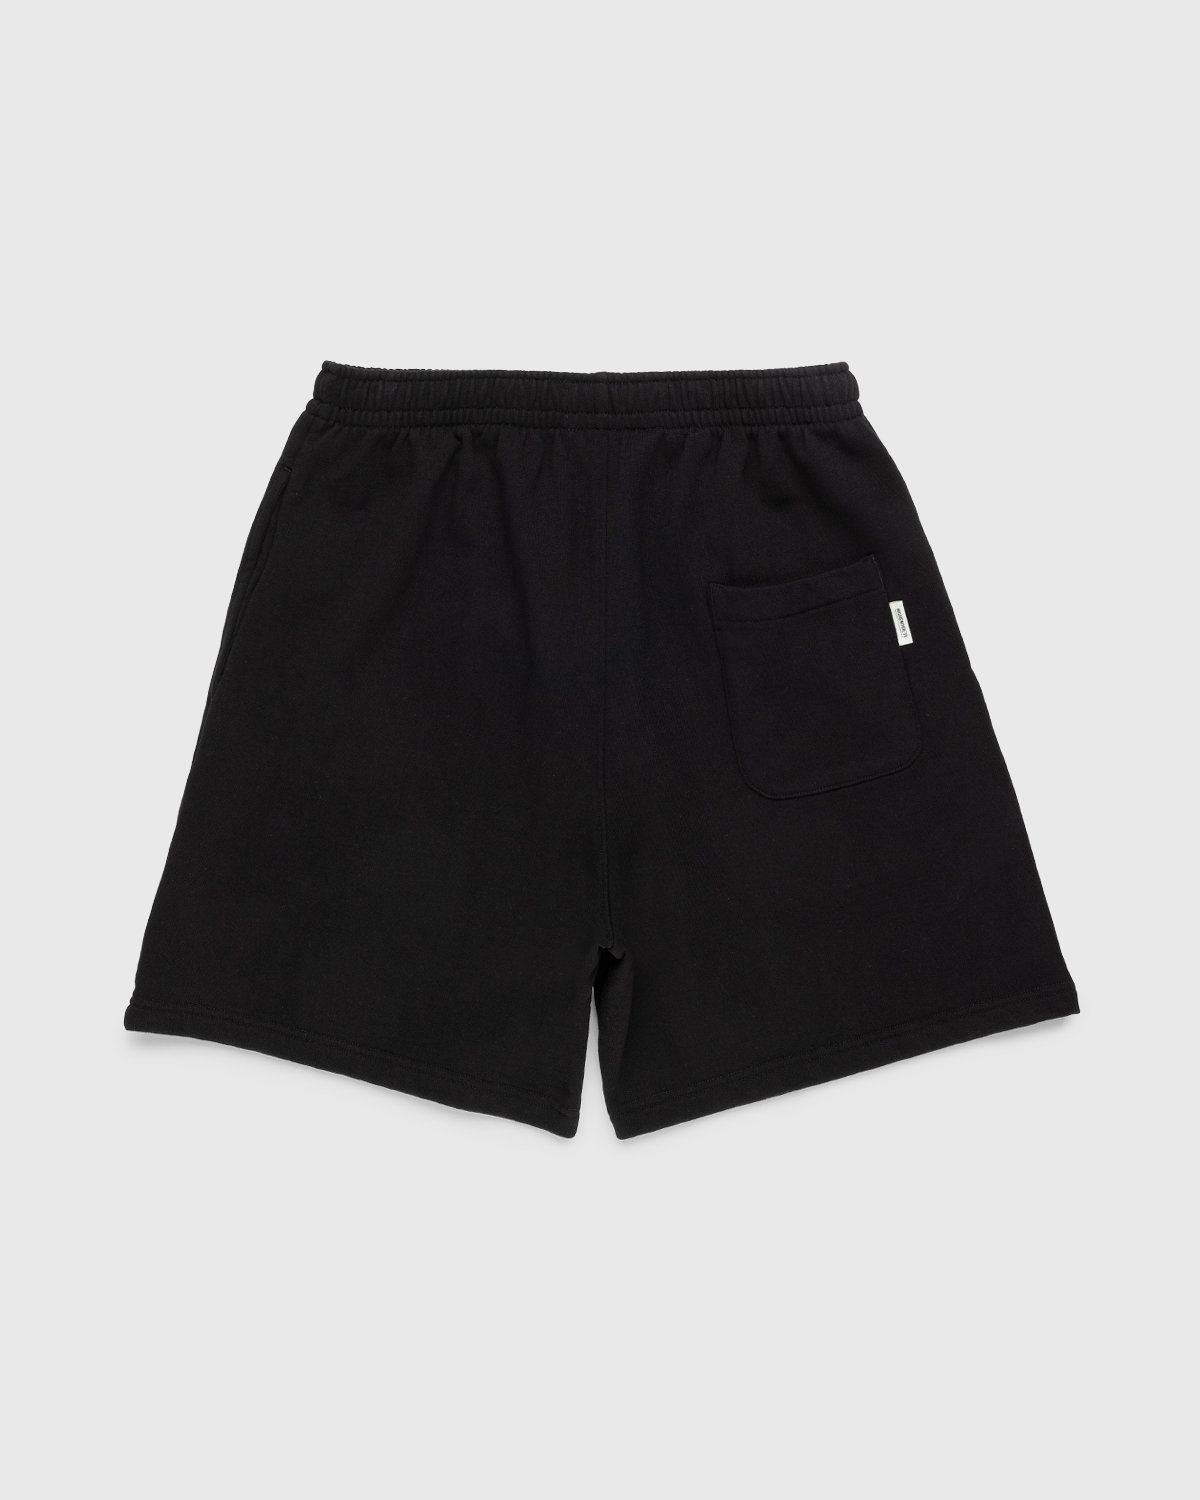 Highsnobiety – Staples Shorts Black - Sweatshorts - Black - Image 2